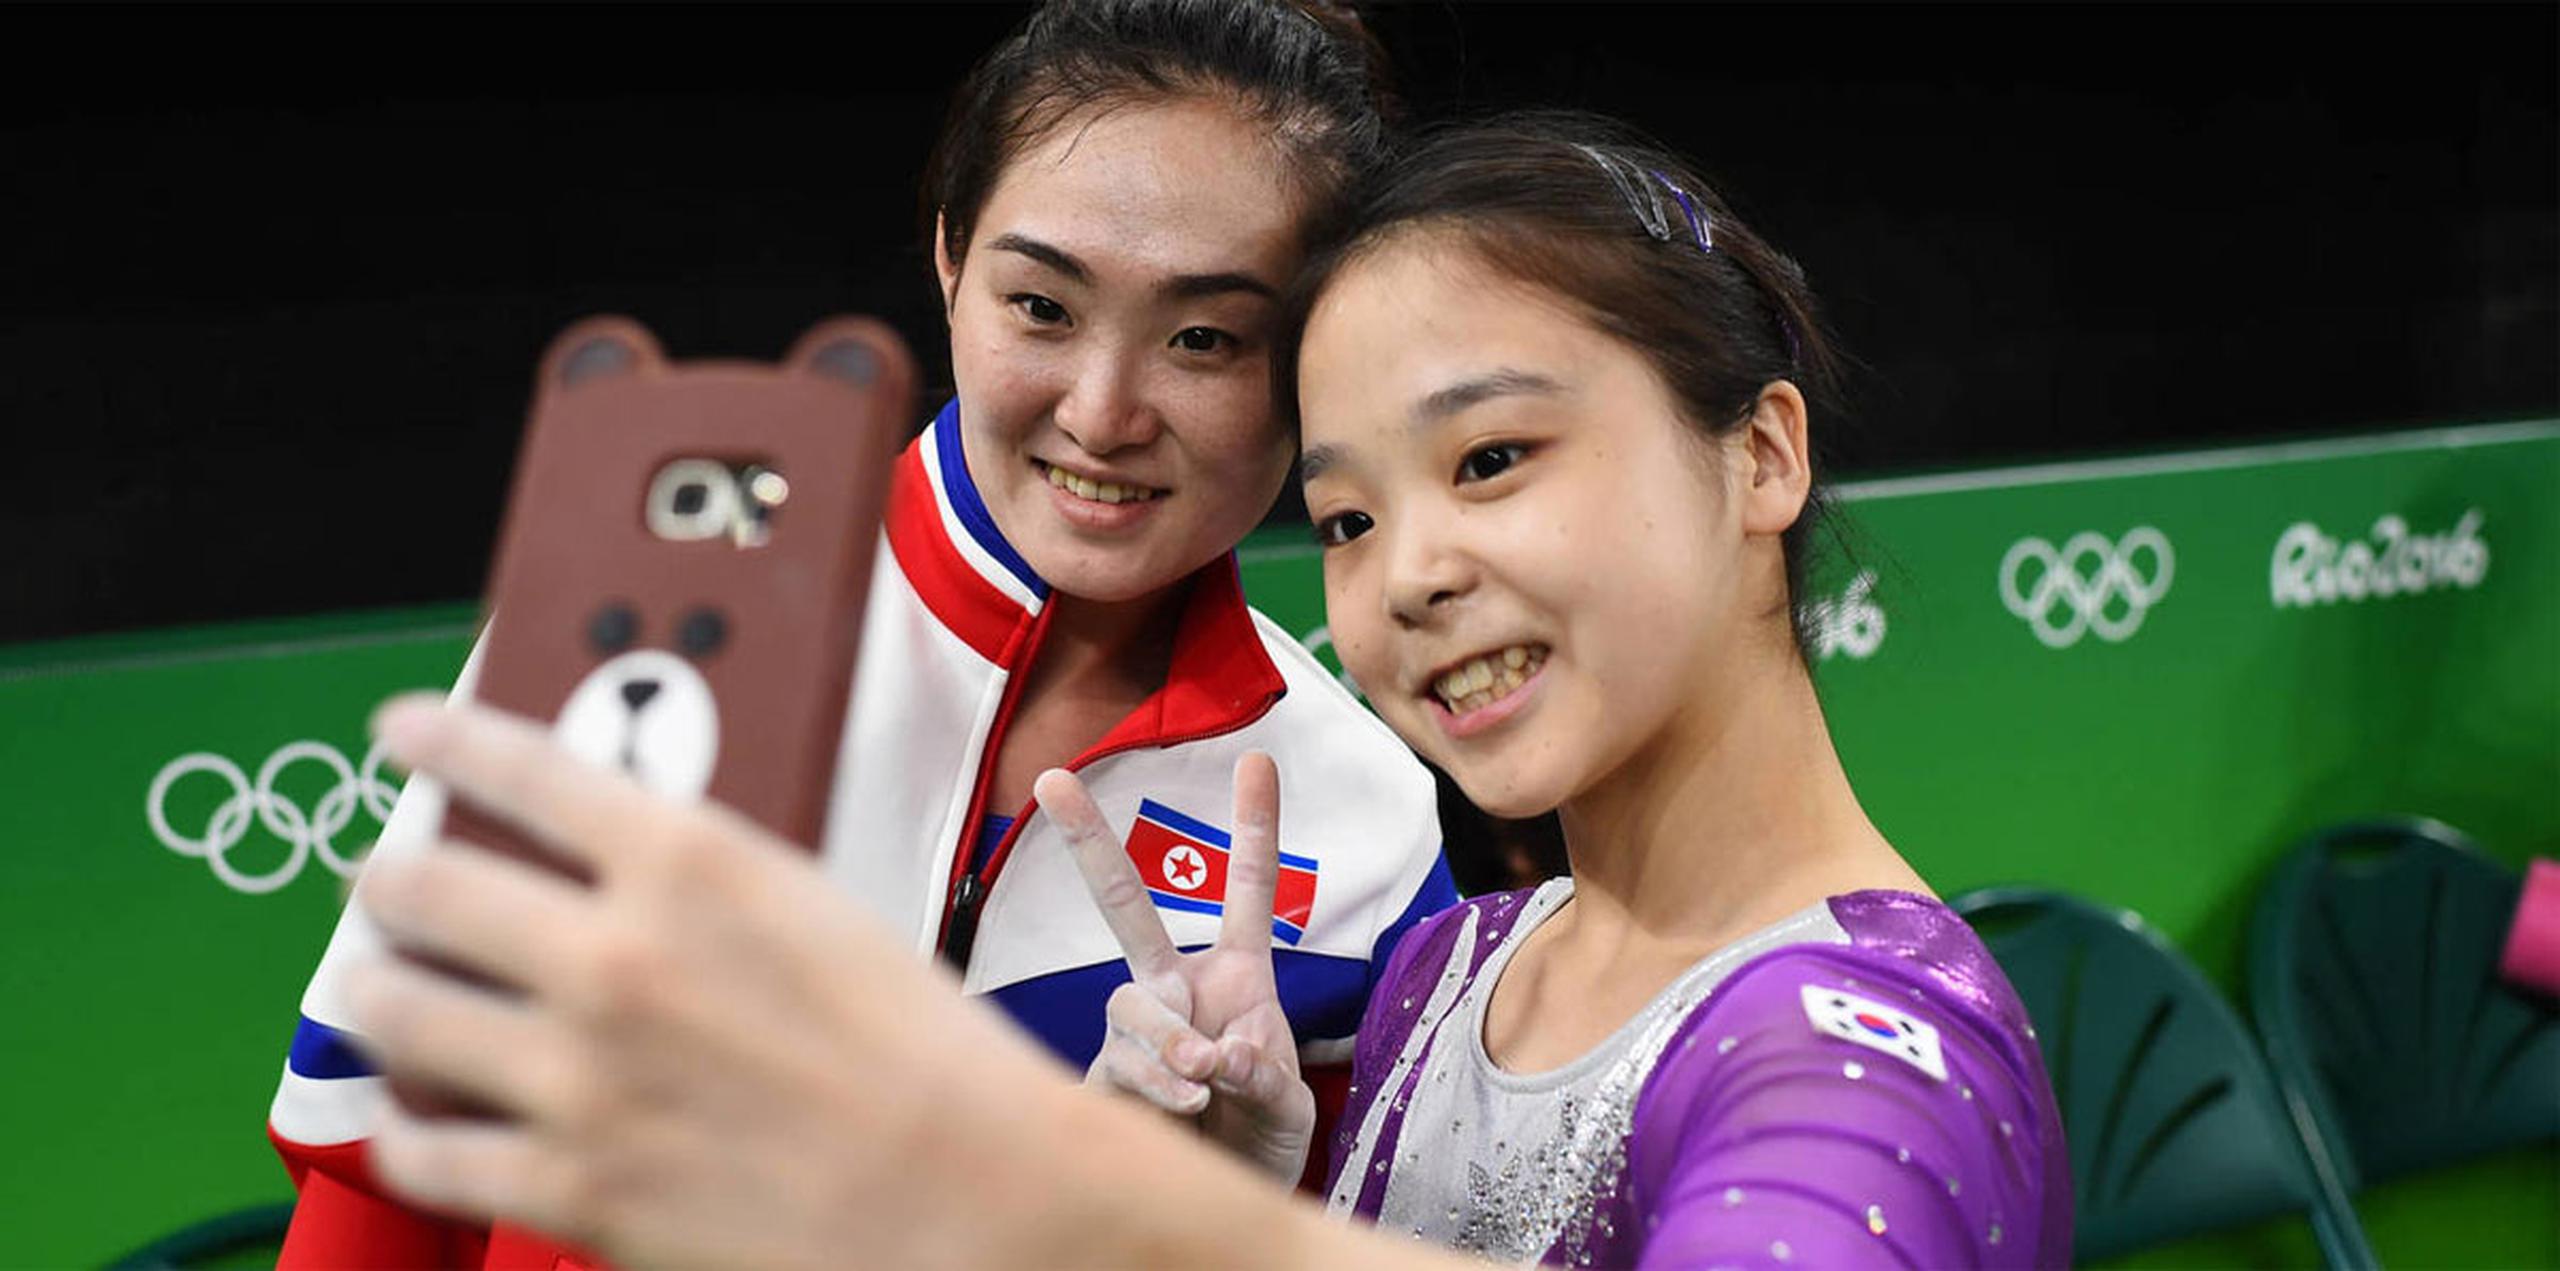 La autofoto de la joven debutante surcoreana Lee Eun-ju con la veterana norcoreana Hong Un-jong, oro en Pekín 2008, tomada el pasado domingo en el descanso de unos entrenamientos ha dado la vuelta al mundo. (Twitter)